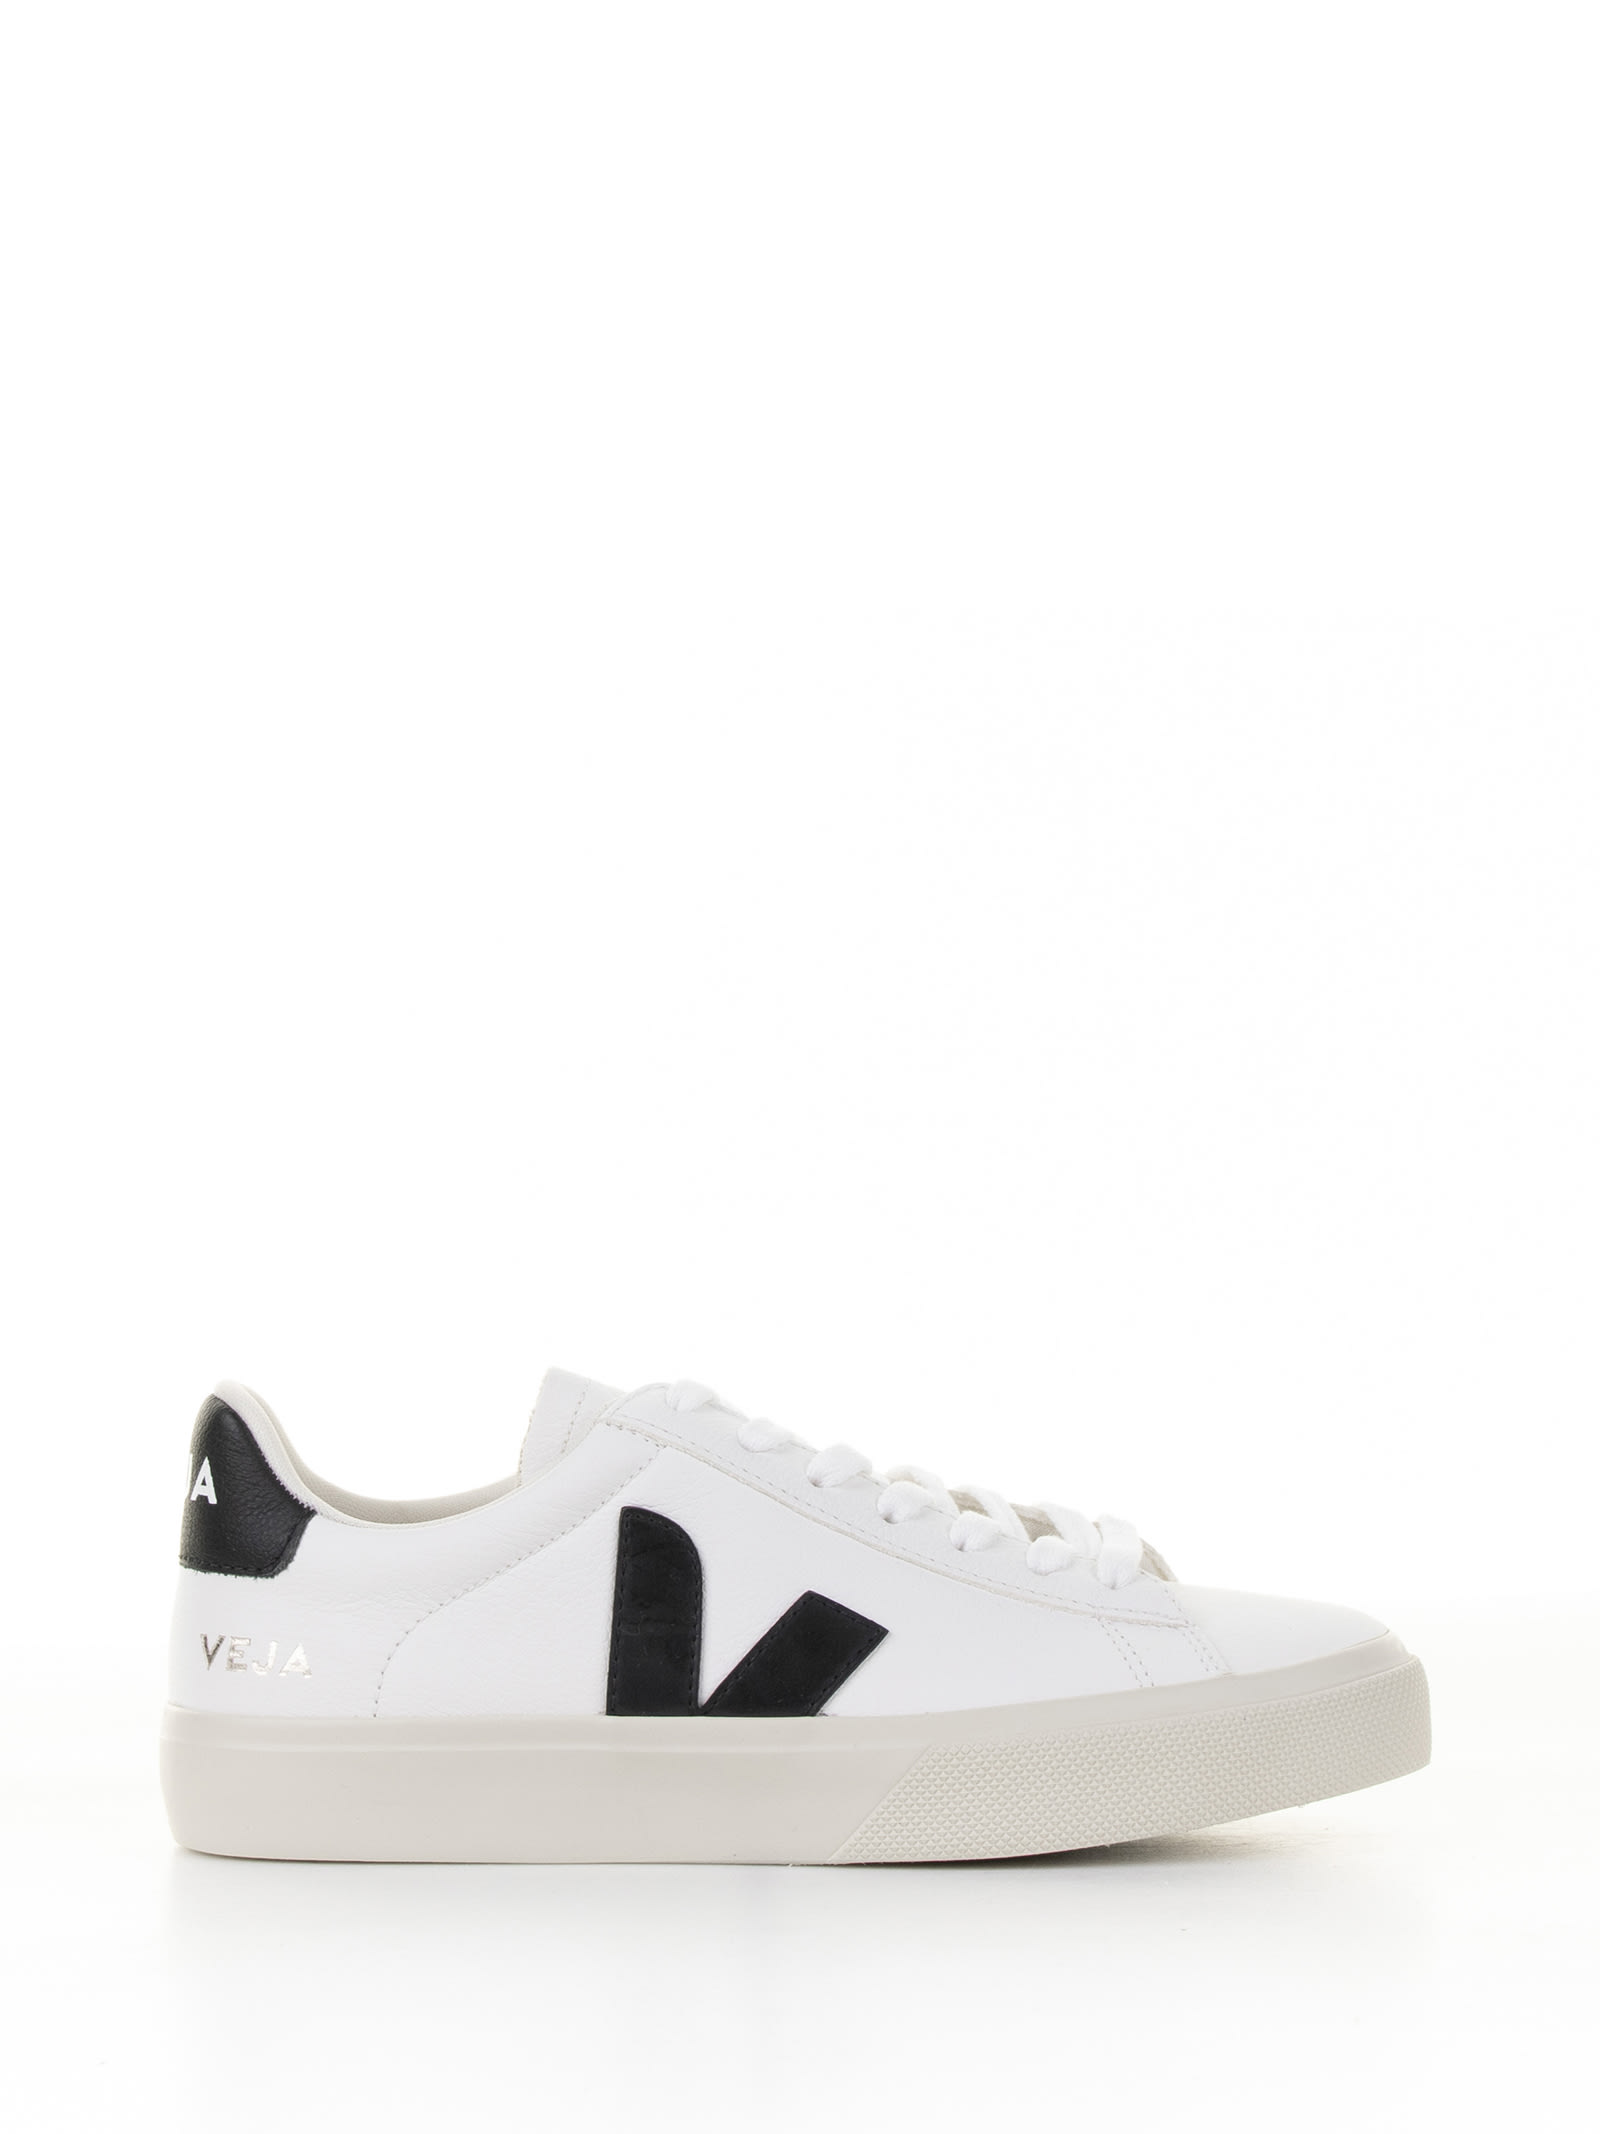 Veja Campo Sneaker In White Black Leather For Men